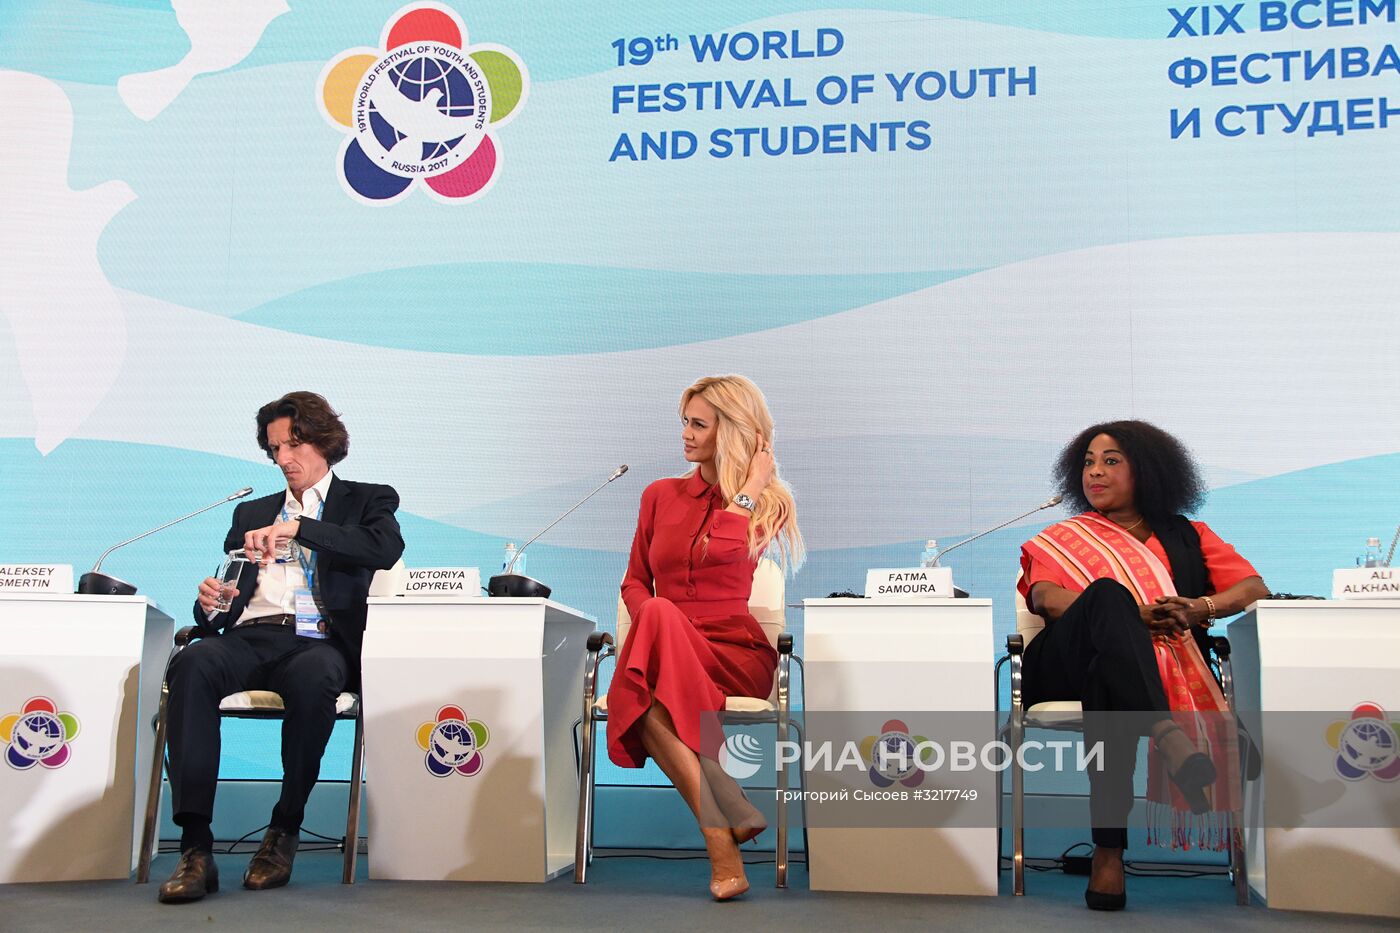 XIX Всемирный фестиваль молодежи и студентов. Дискуссионная программа